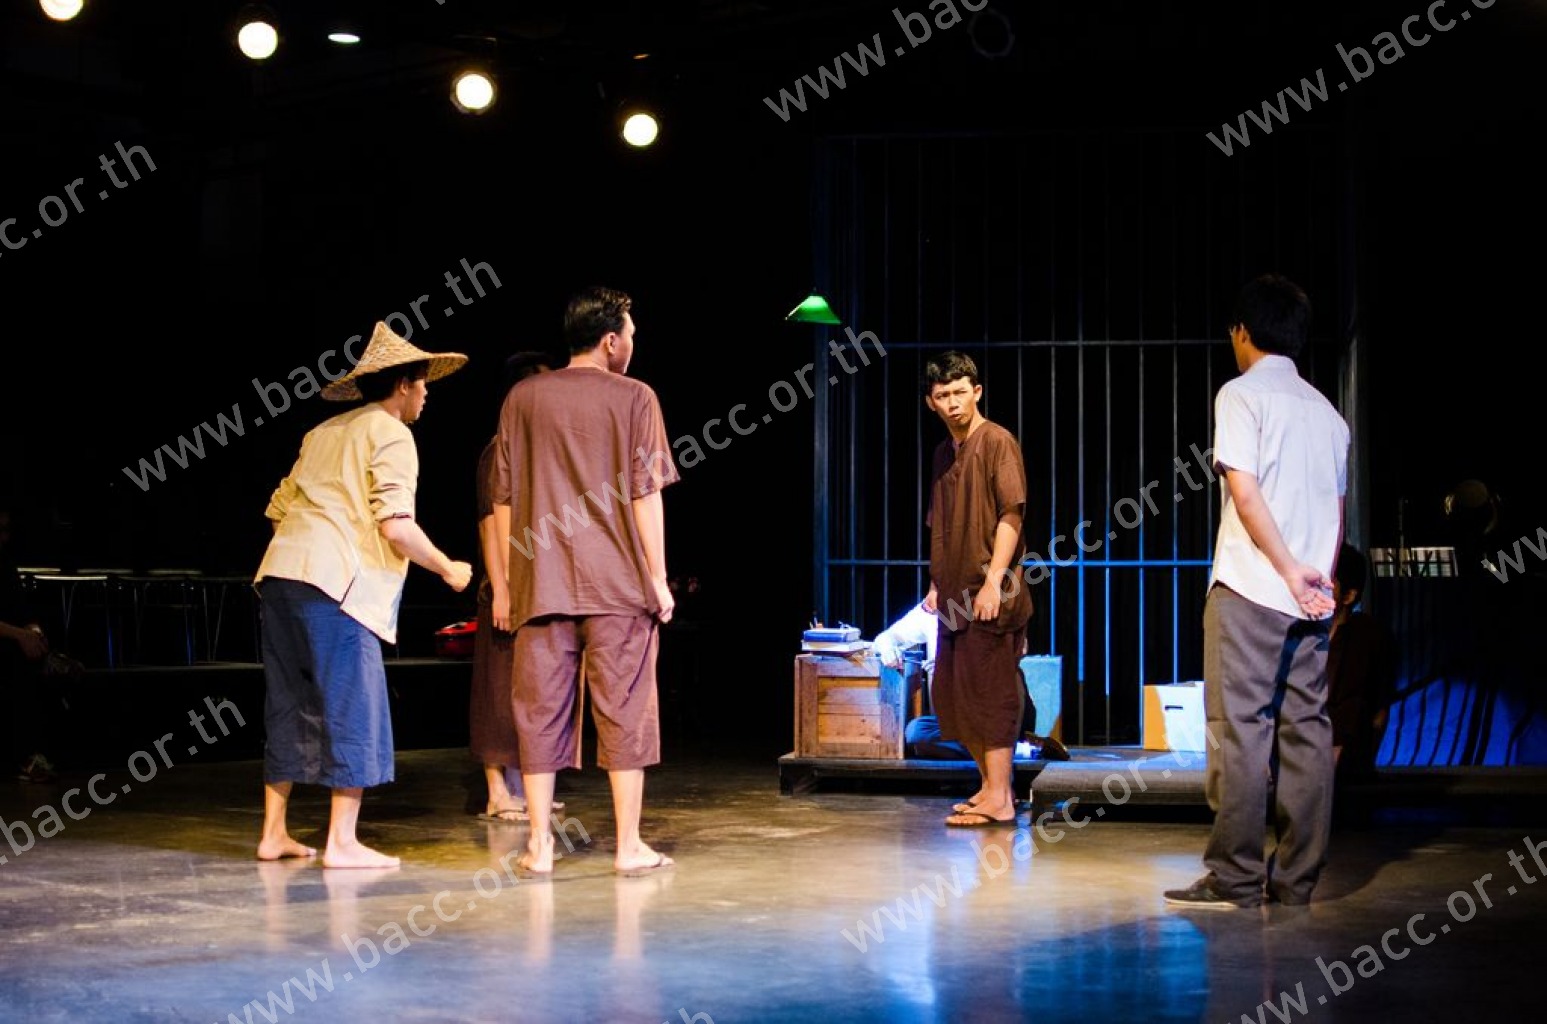 การแสดงภายใต้เทศกาลศิลปะการแสดง ครั้งที่ 3 : ละครร้อง ศรีบูรพา บันทึกแห่งอิสรา